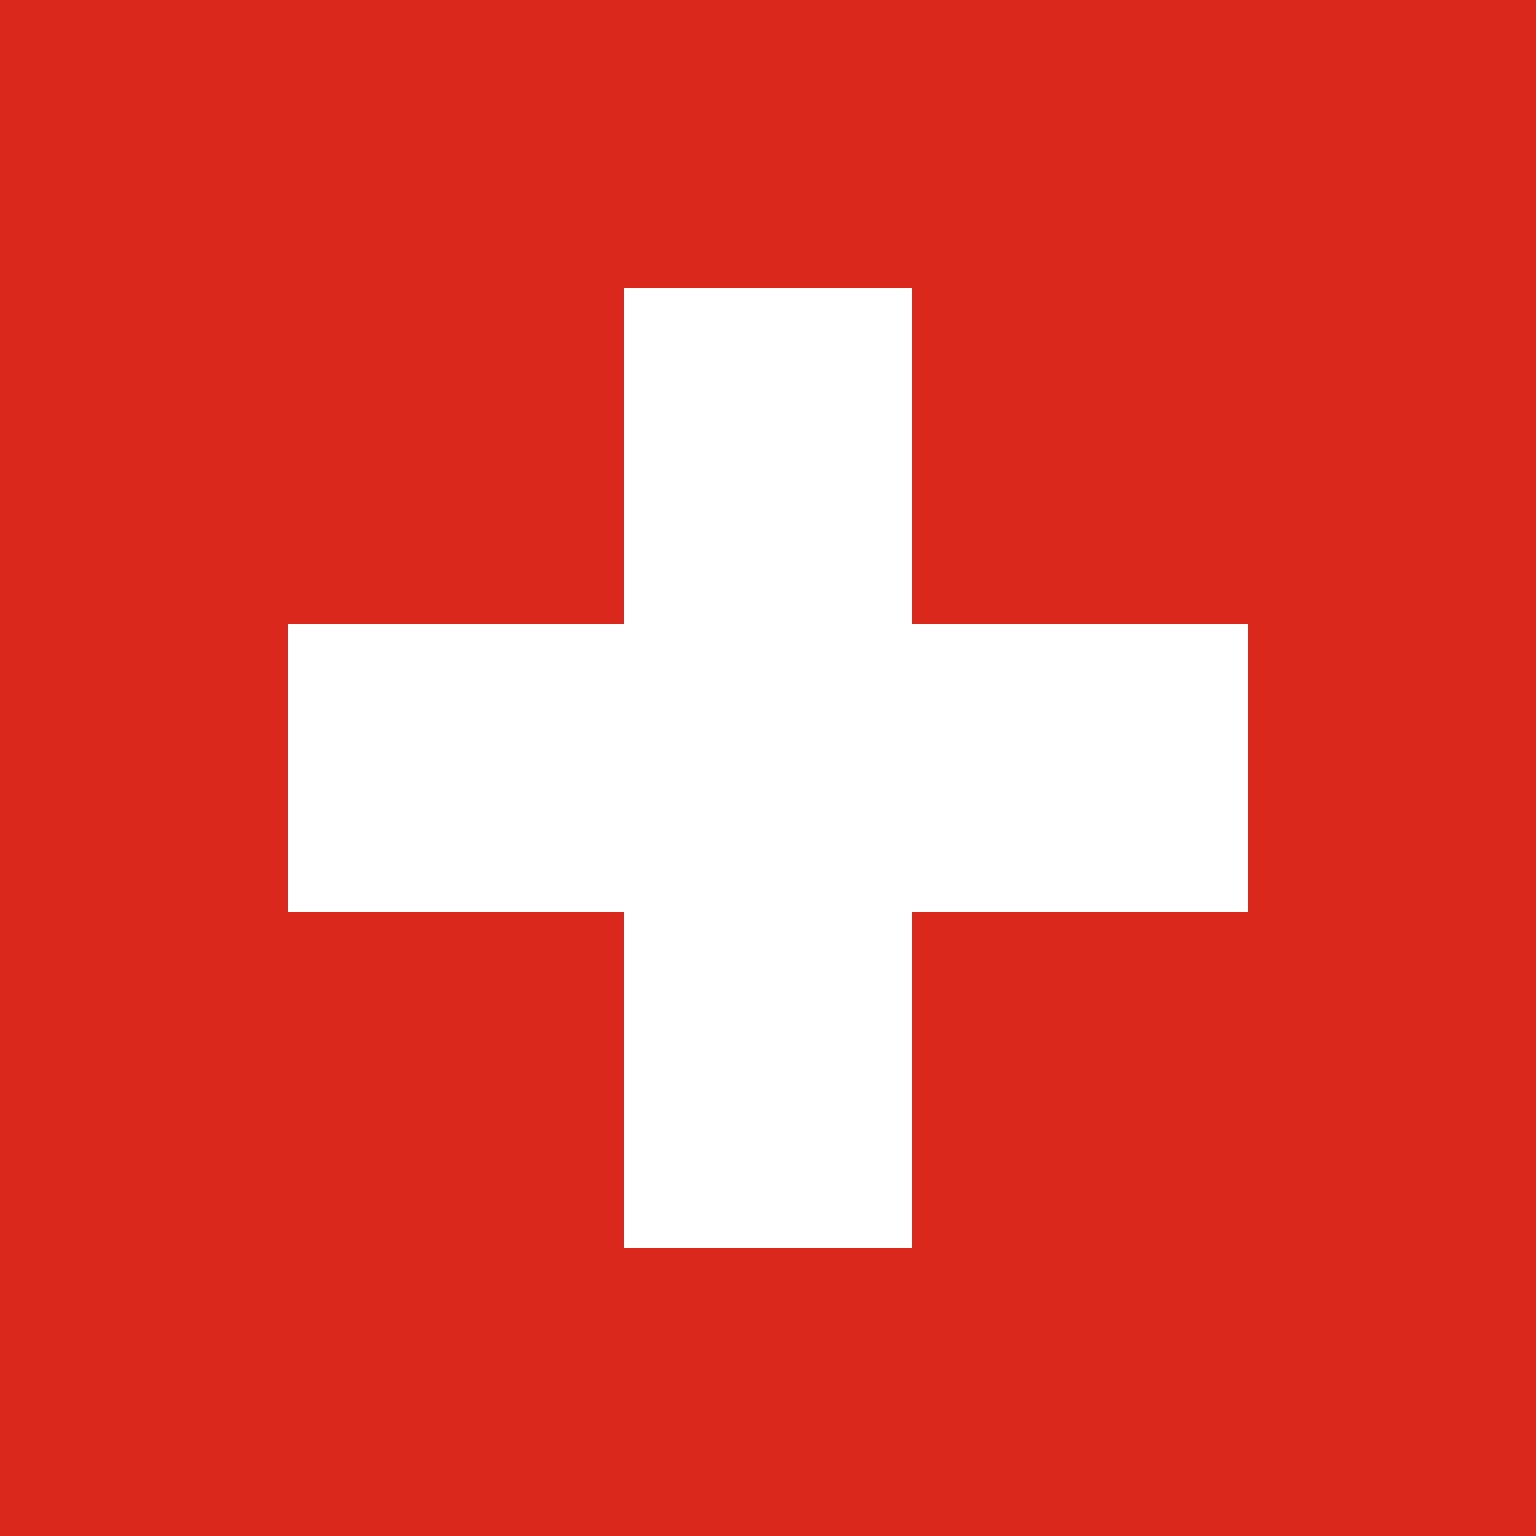 瑞士国旗是指瑞士联邦国旗,呈正方形,旗地为红色,正中一个白色十字.